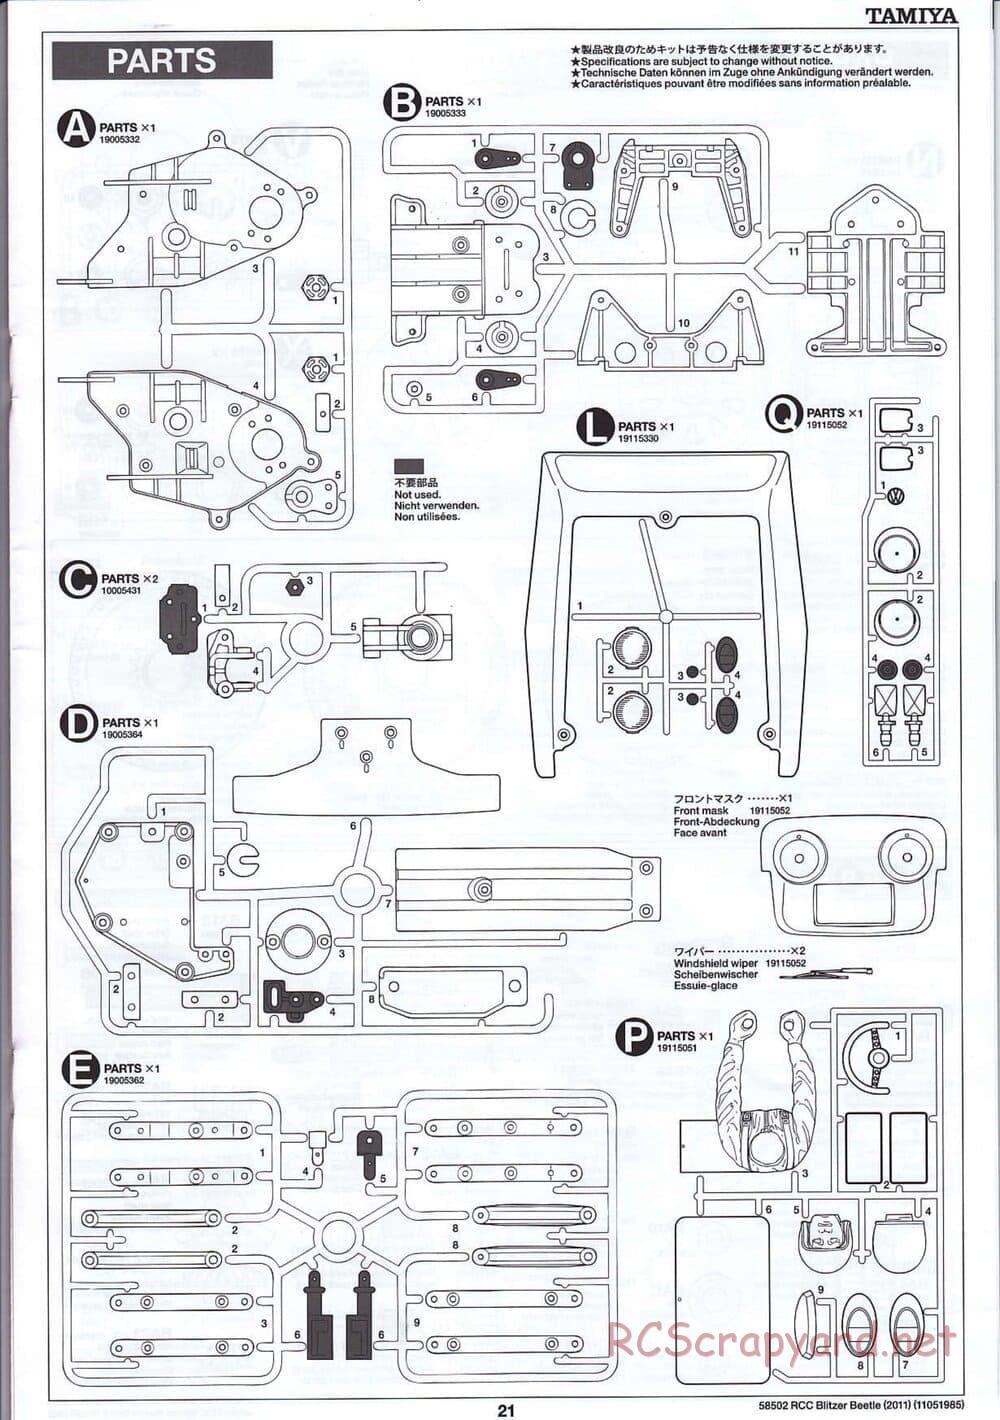 Tamiya - Blitzer Beetle 2011 - FAL Chassis - Manual - Page 21